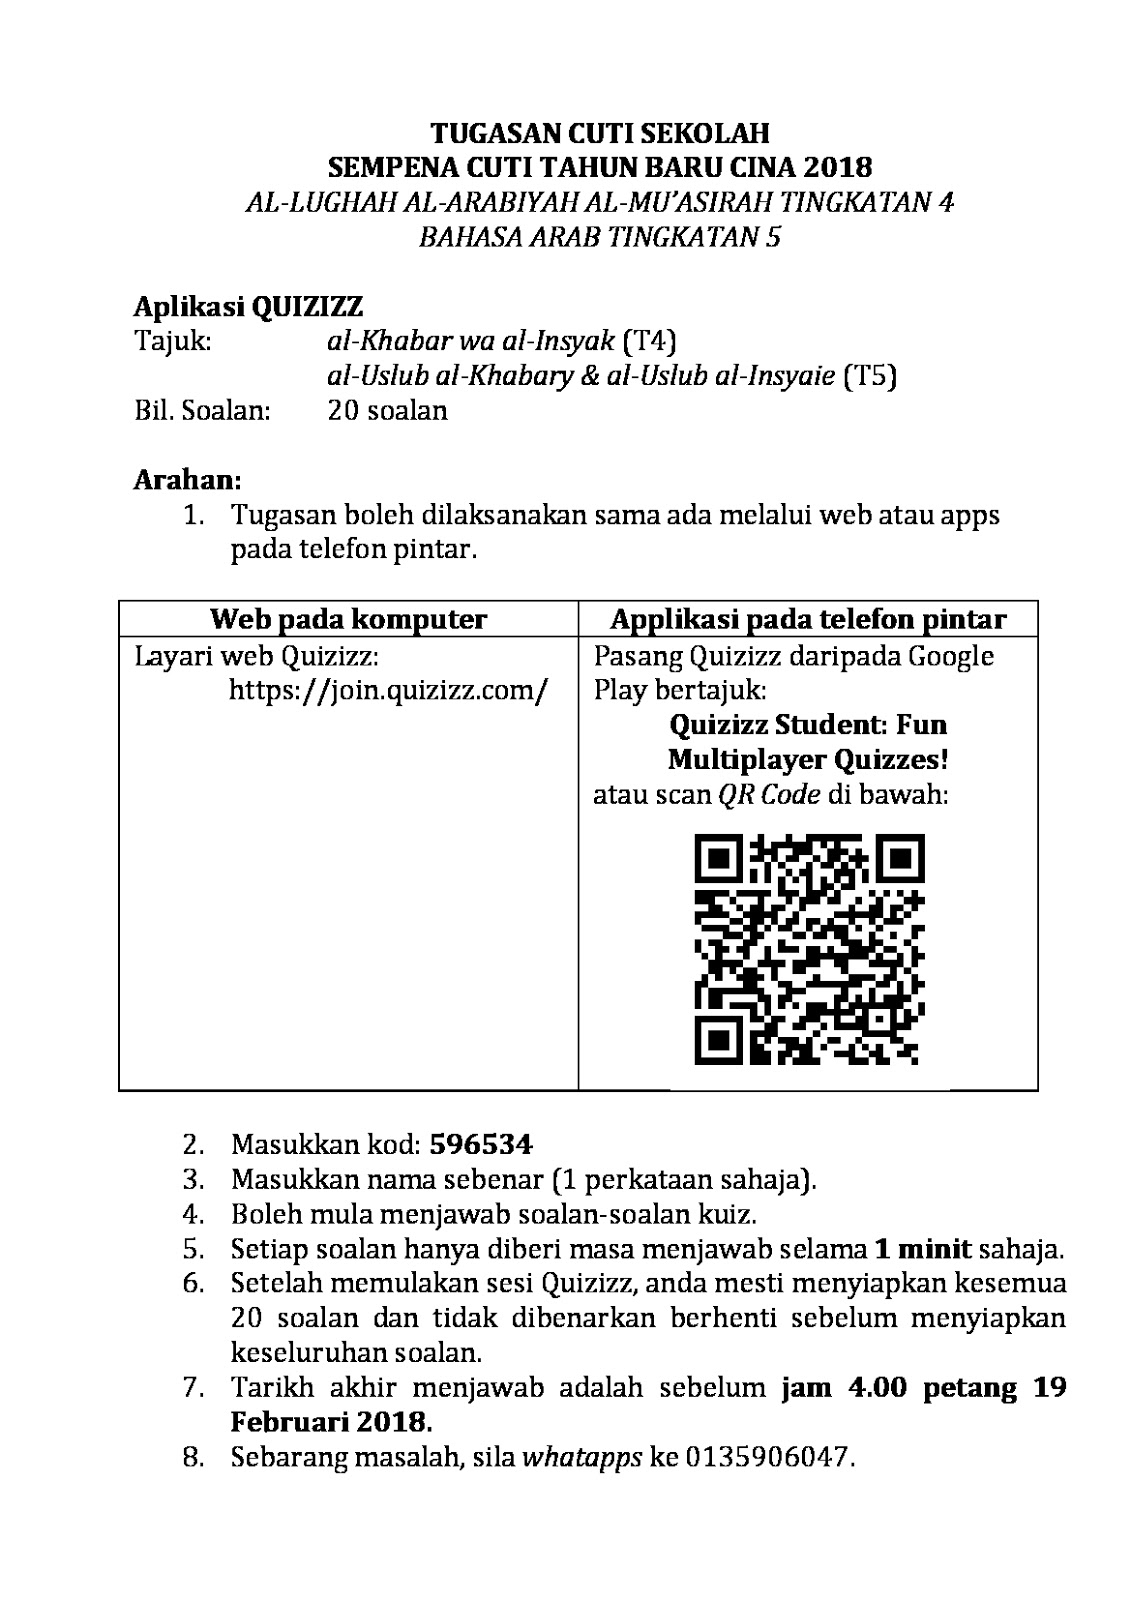 Bahasasyurga.net: PAK21 Quizizz (Homework) dalam PdPc 